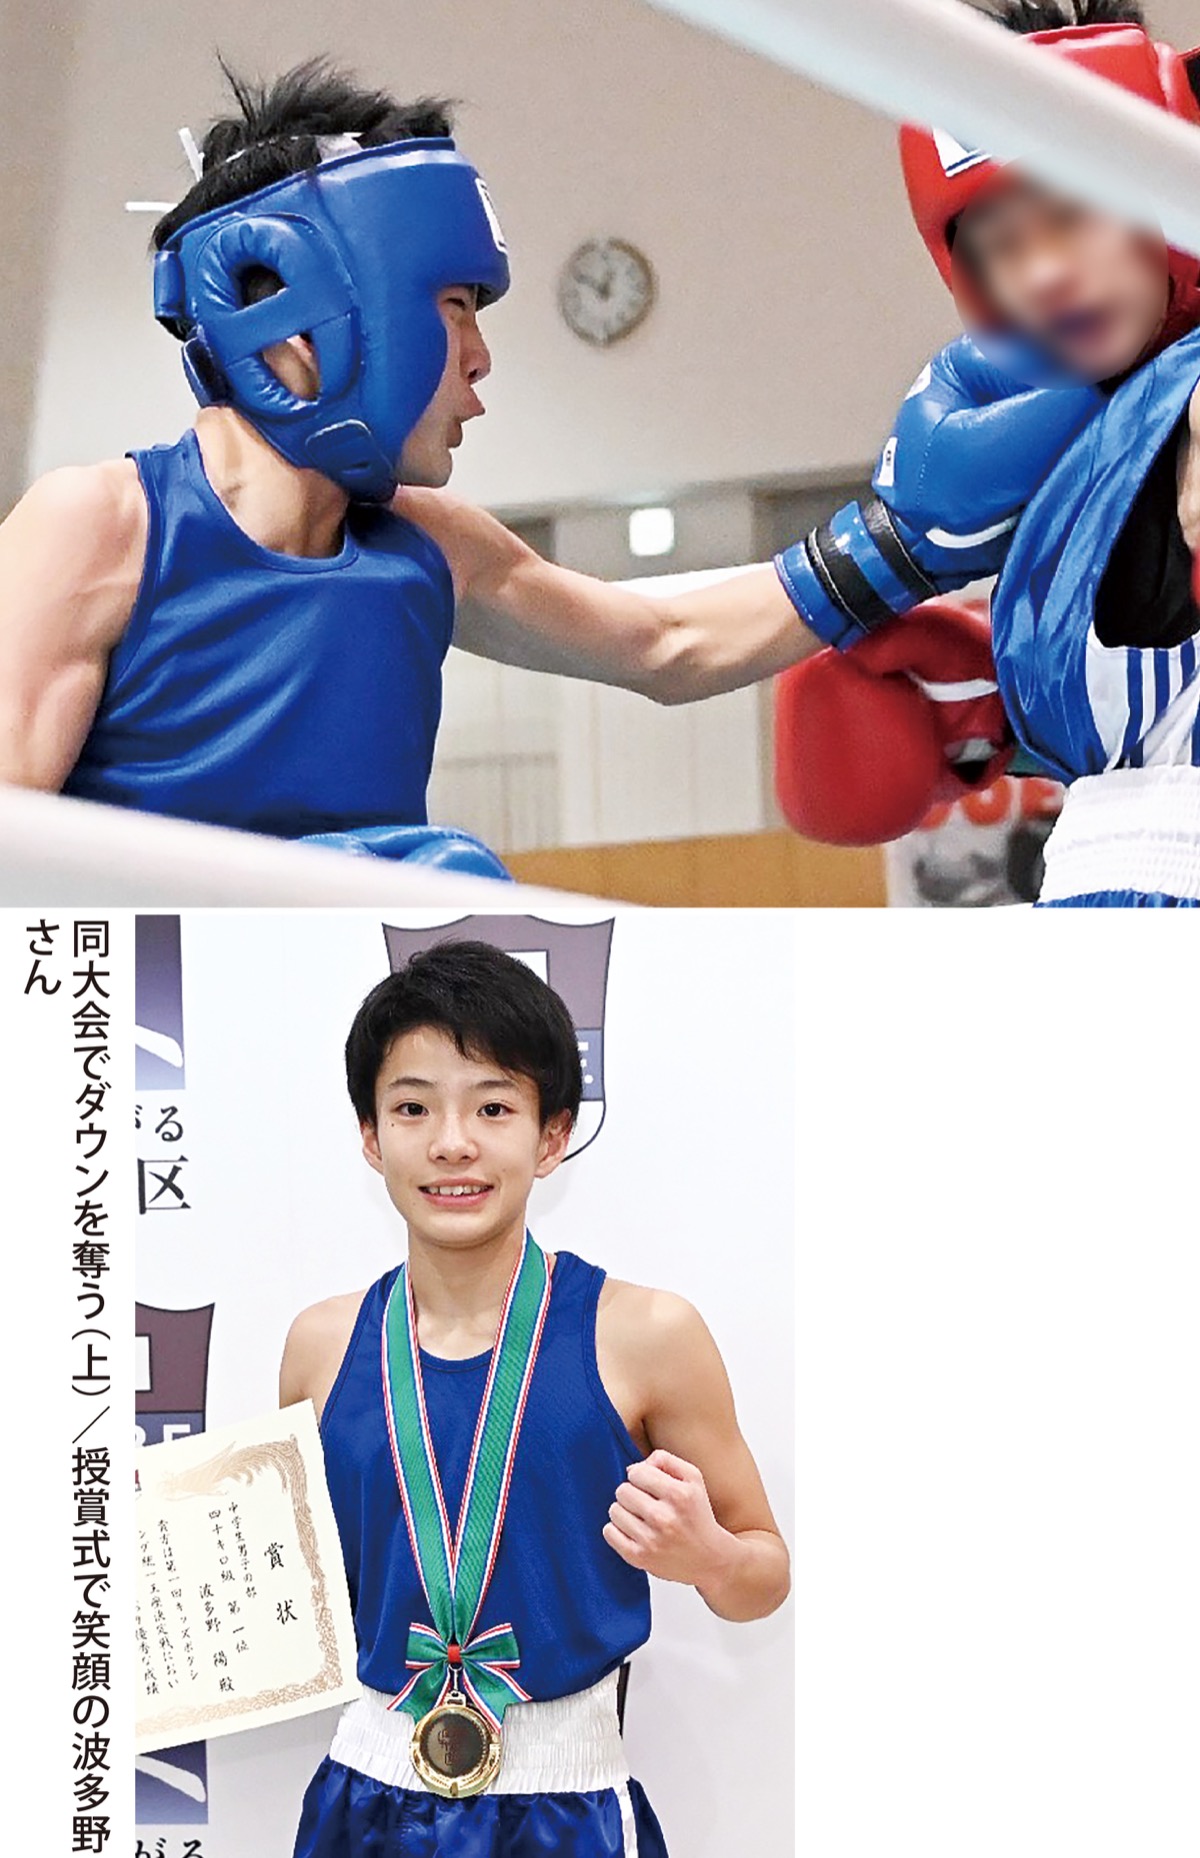 ボクシング 波多野陽 はる さん 日本キッズ 初代王者に 夢はオリンピック さがみはら中央区 タウンニュース